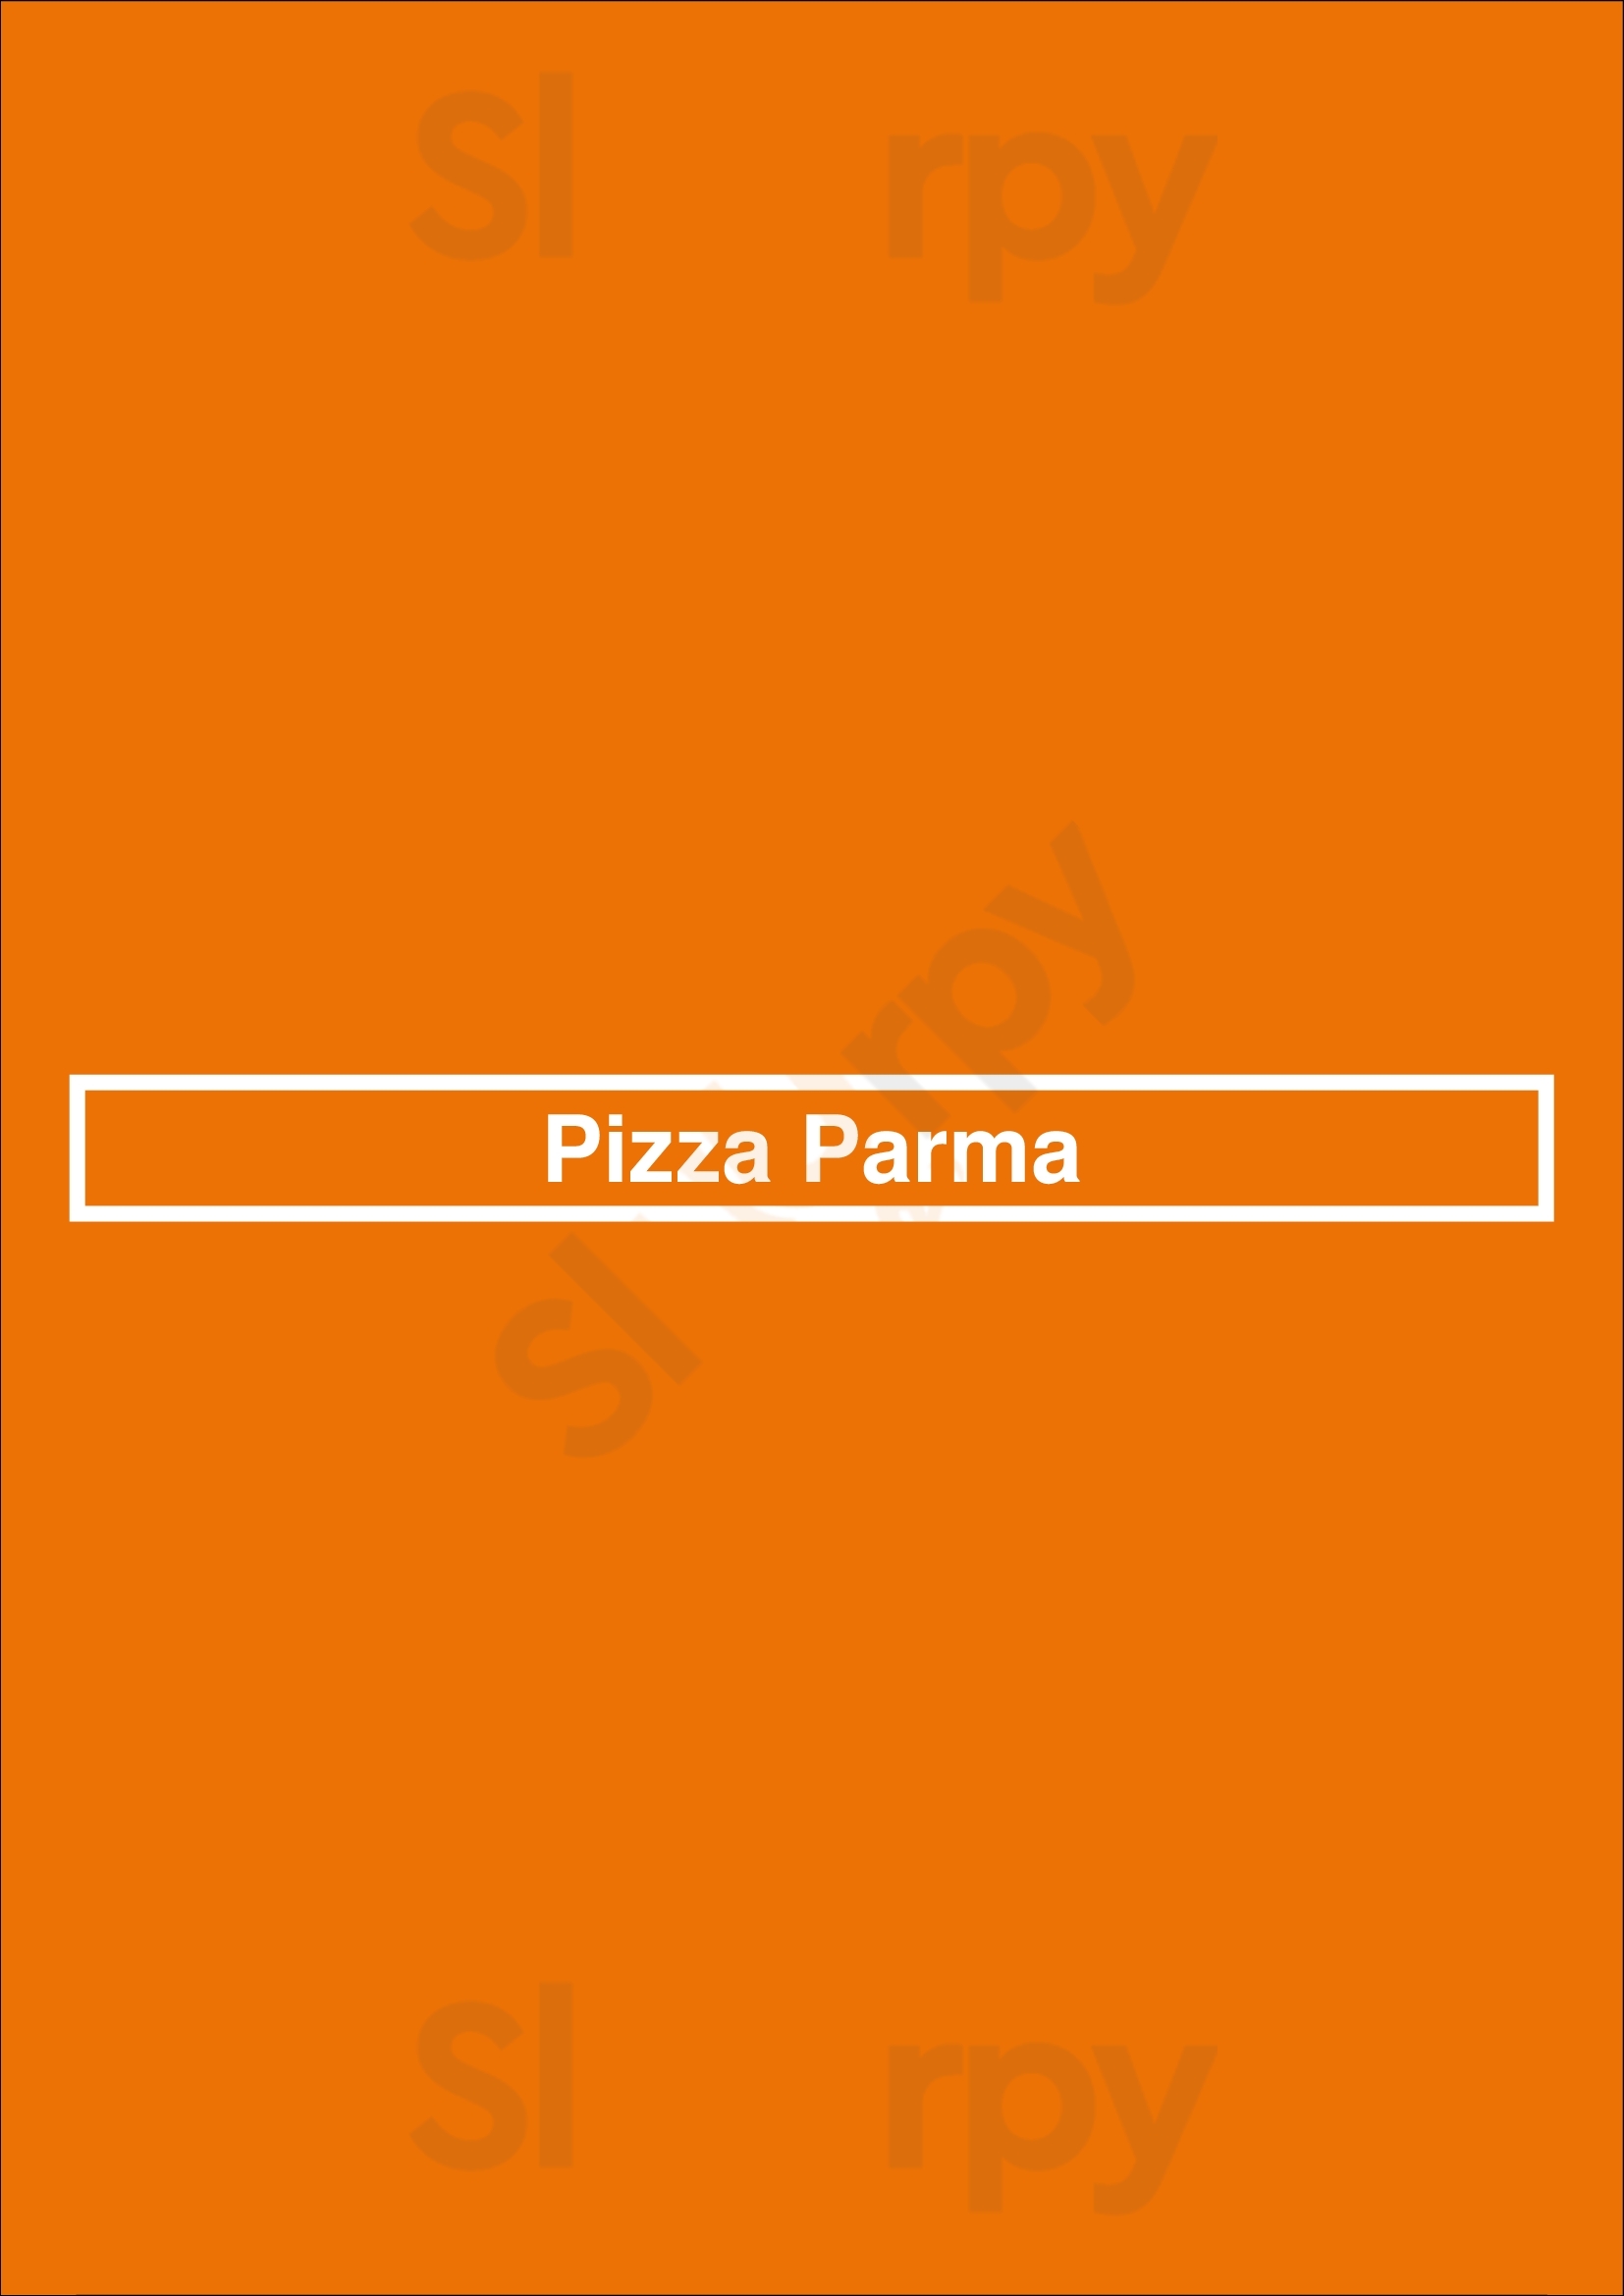 Pizza Parma Pittsburgh Menu - 1